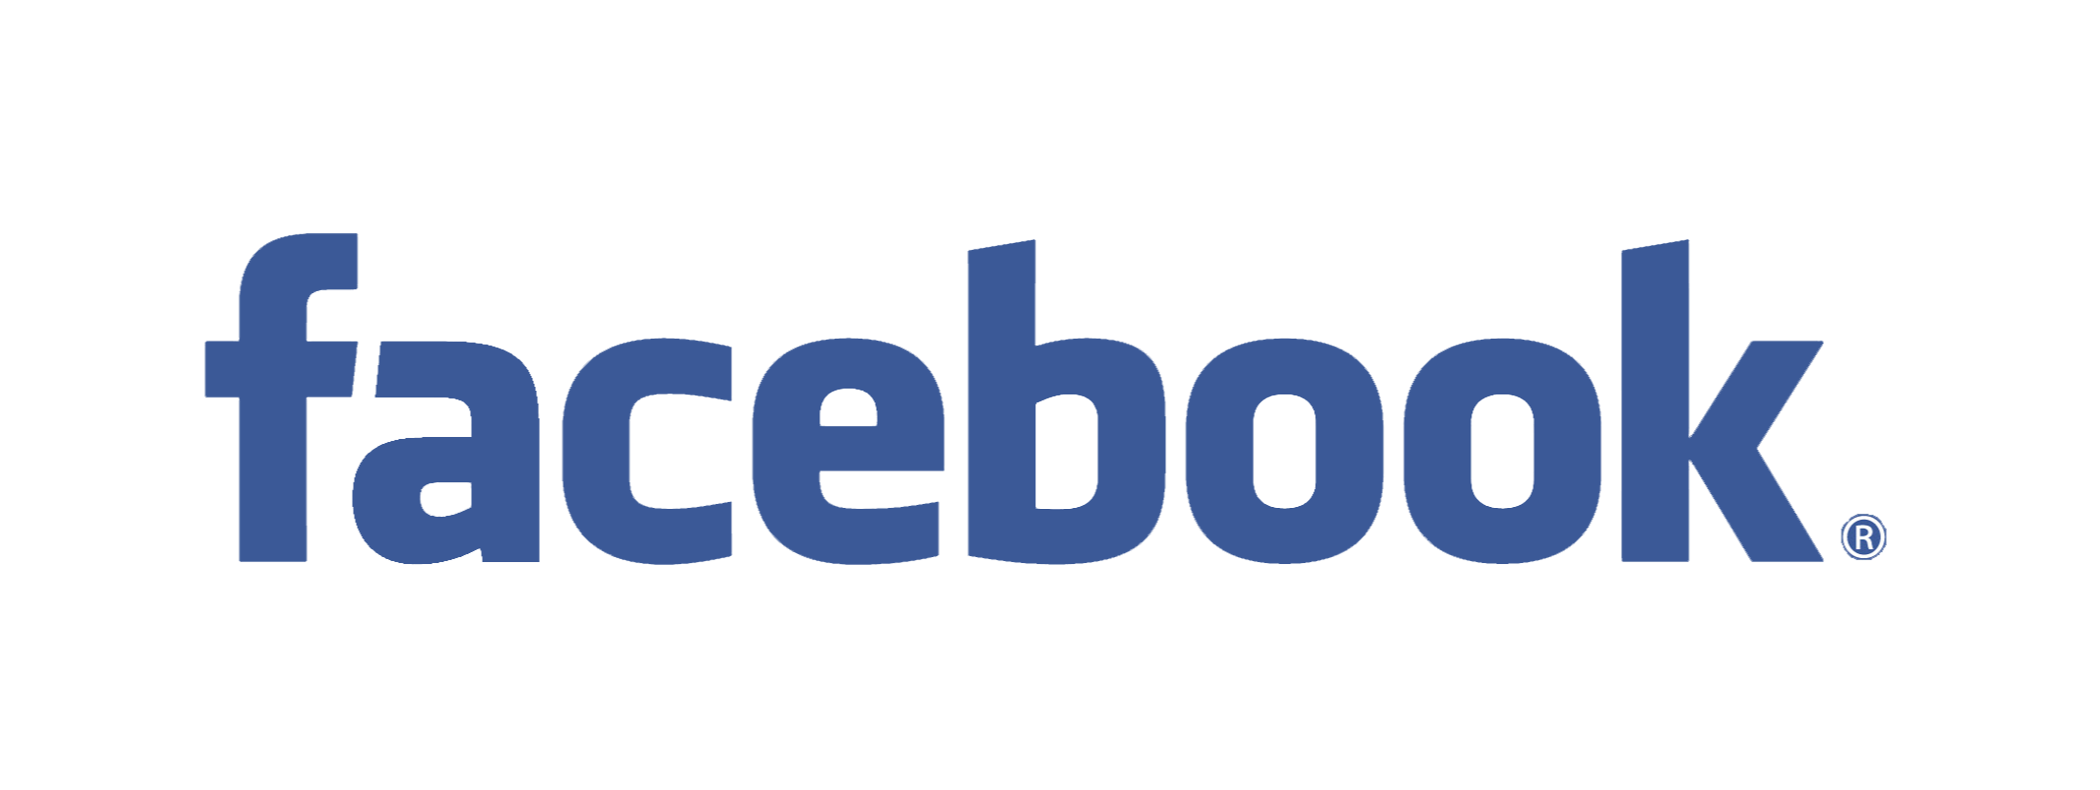 Facebook ändert im Januar 2015 die Nutzungsrechte